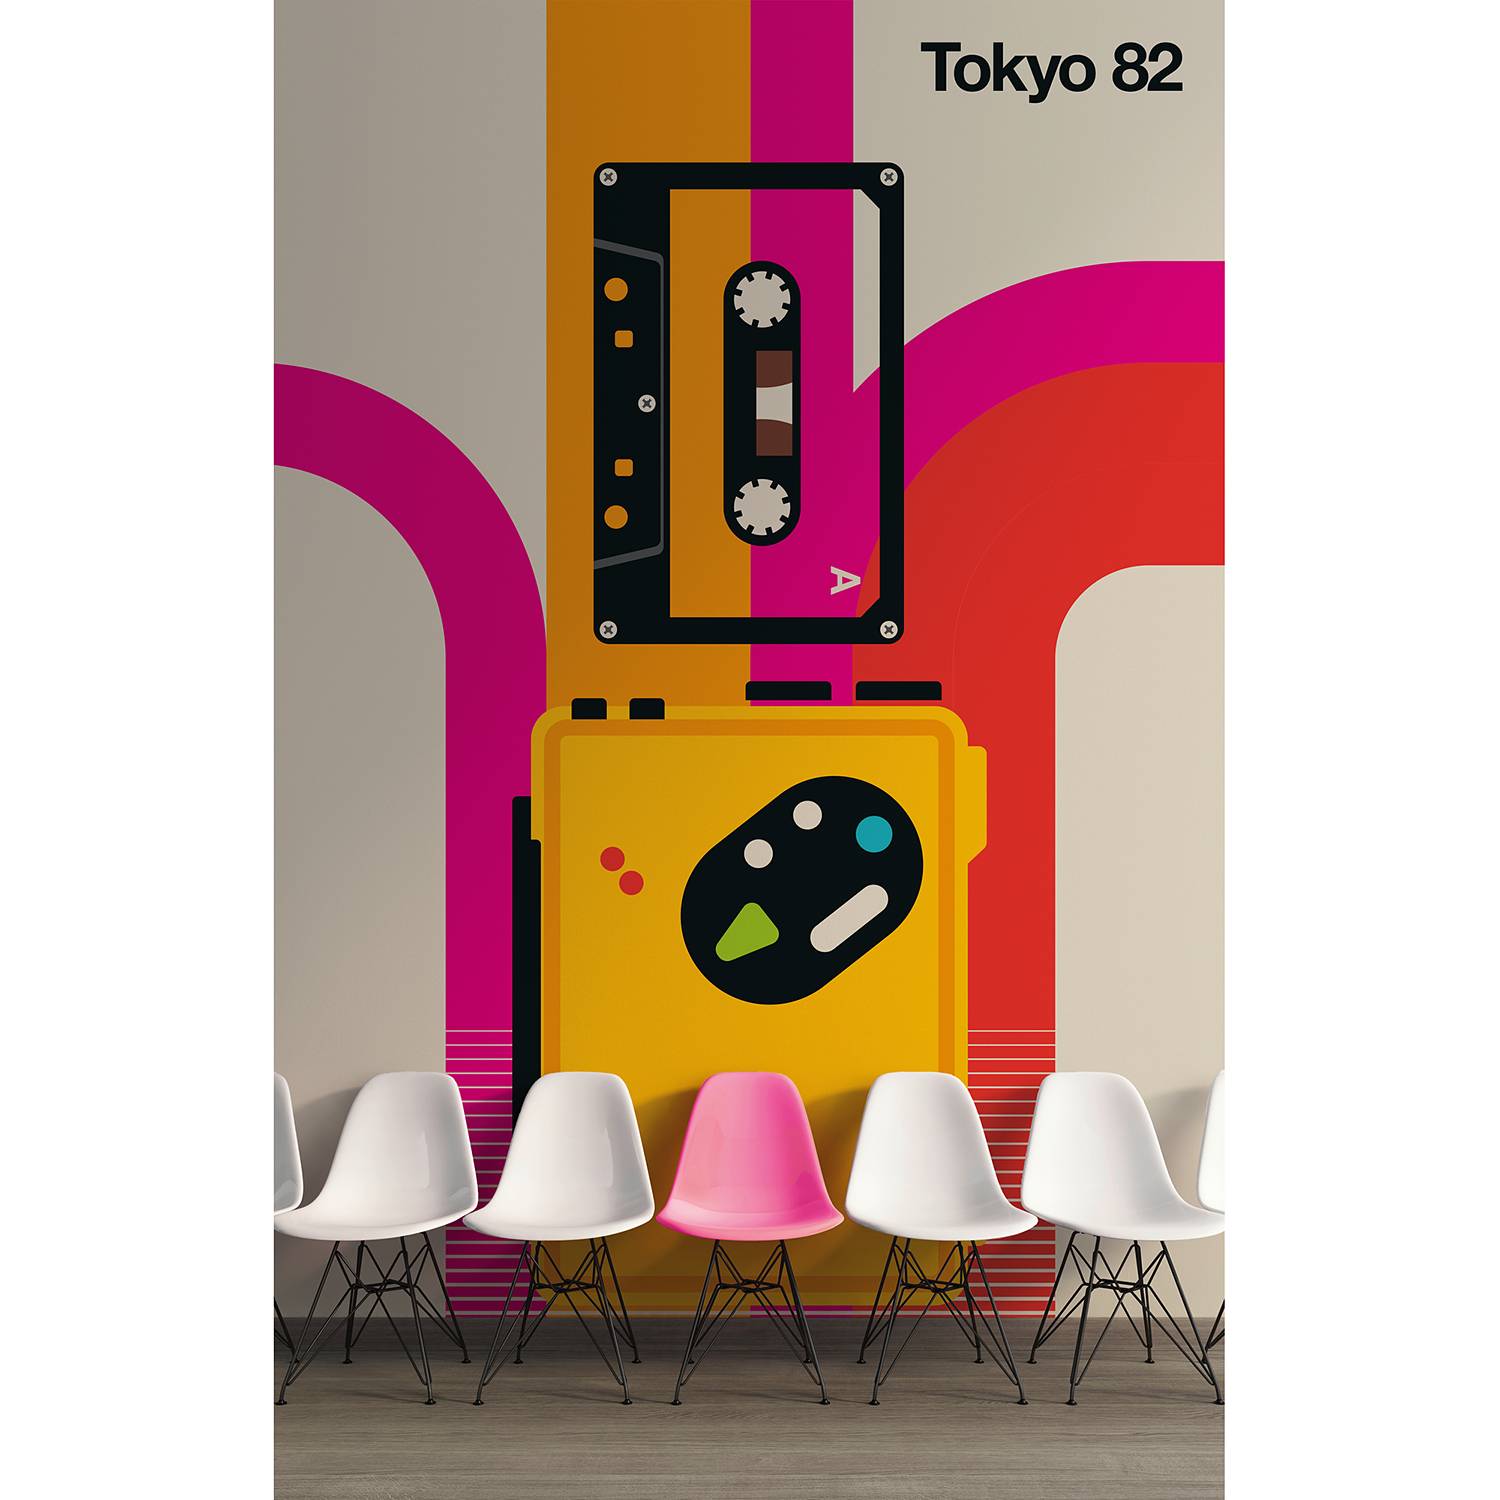 Fototapete Tokyo 82 von A.S. Création